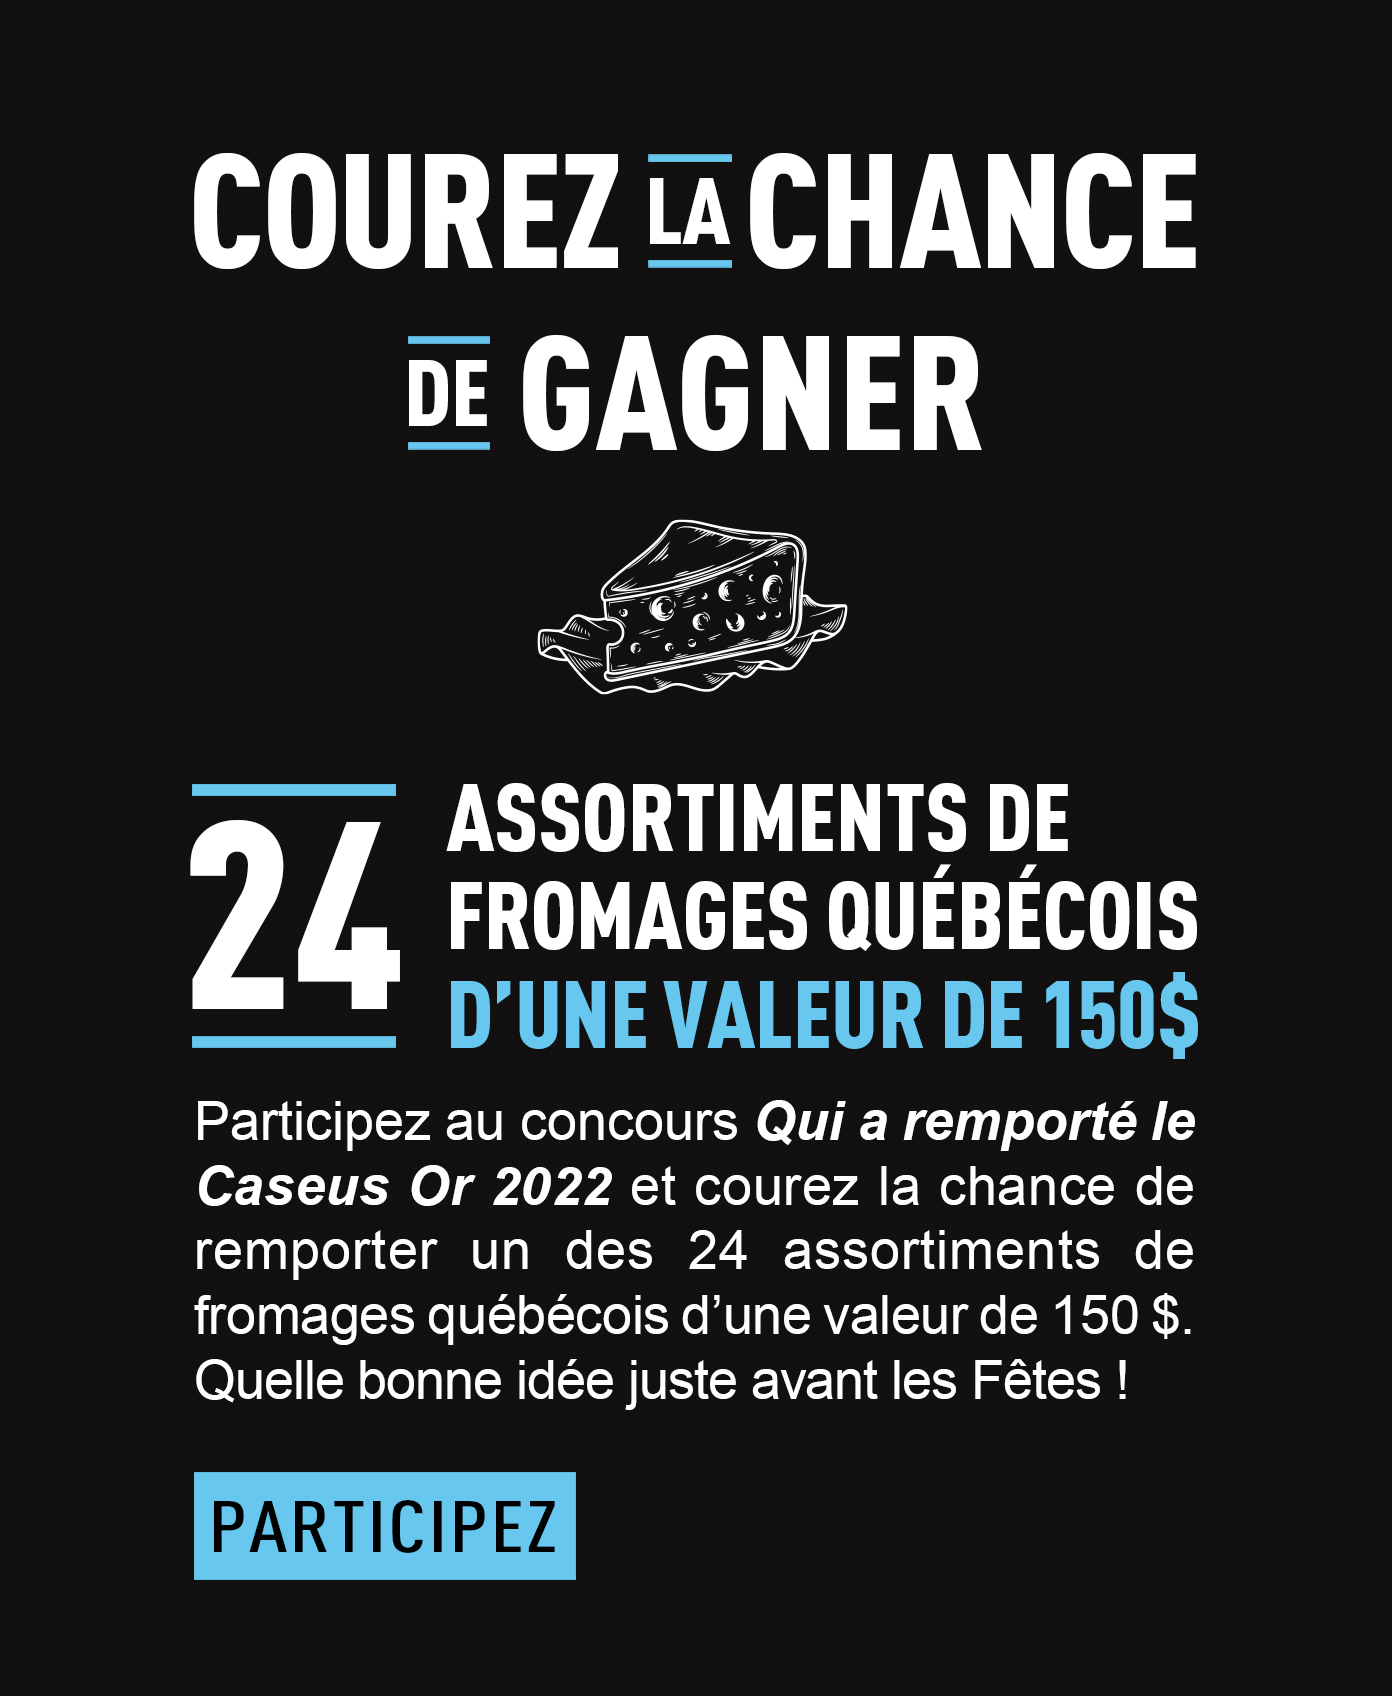 Courez la chance de gagner 24 assortiements de fromages québécois d'une valeur de 150$